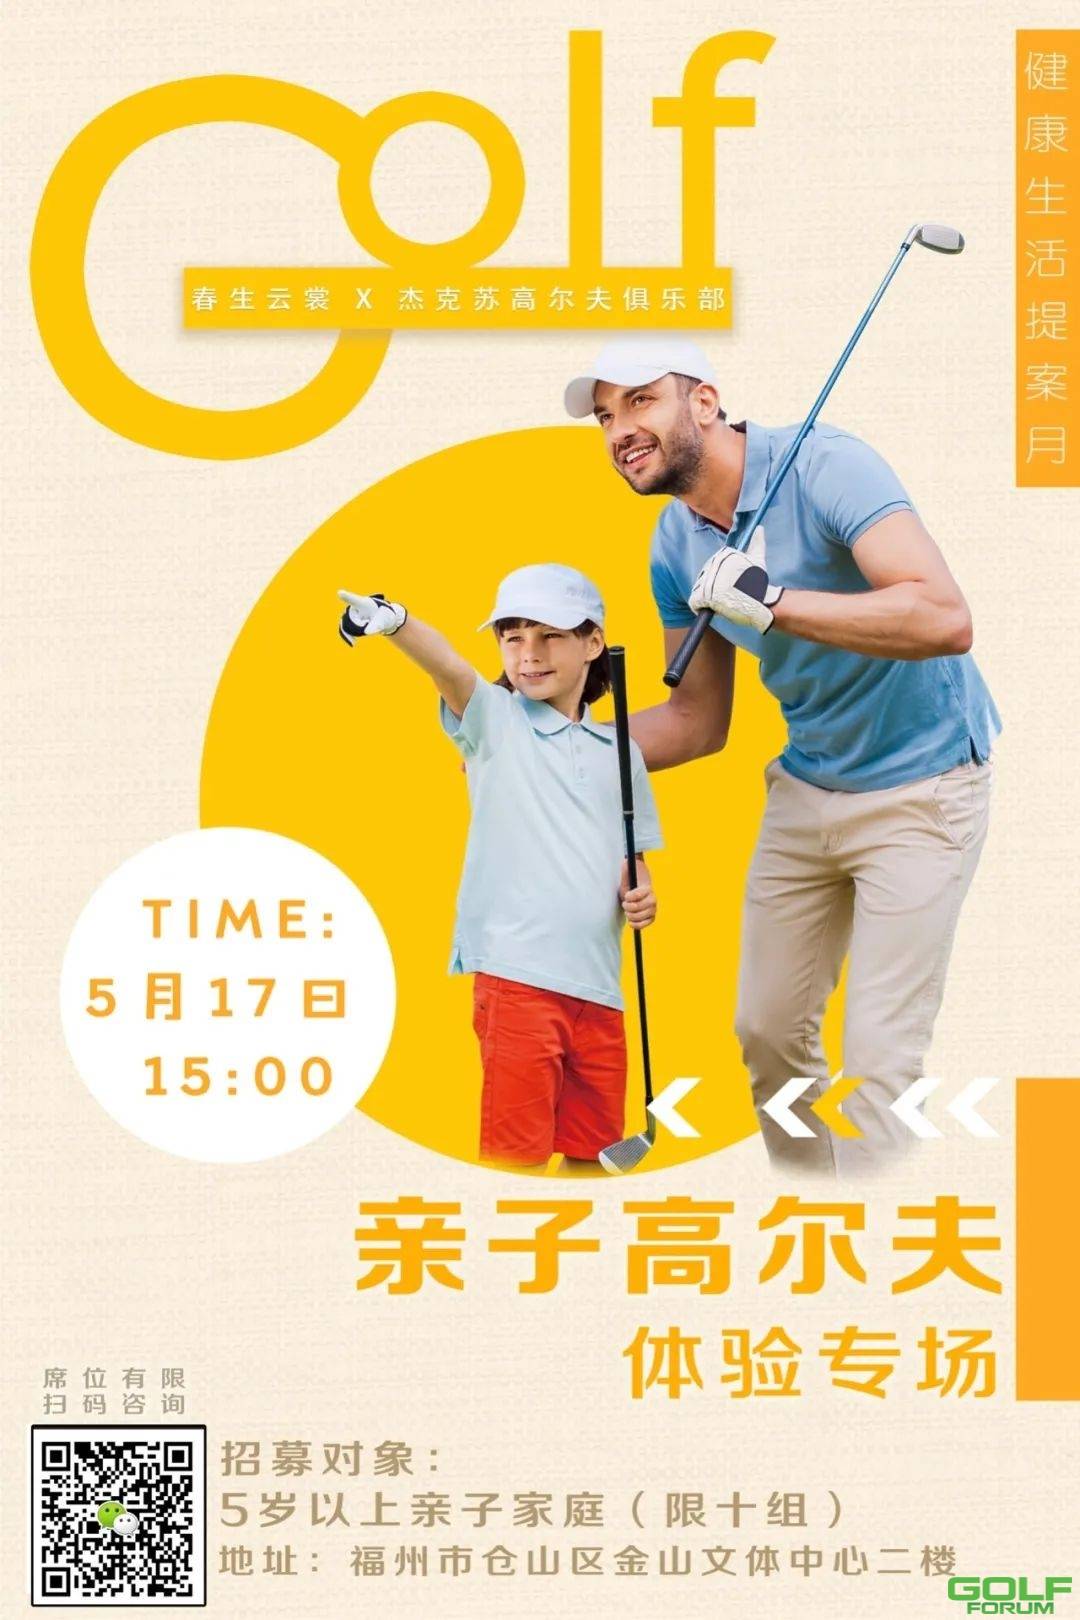 5月17日，杰克苏高尔夫俱乐部X春生云裳为你开启亲子高尔夫专场！ ...